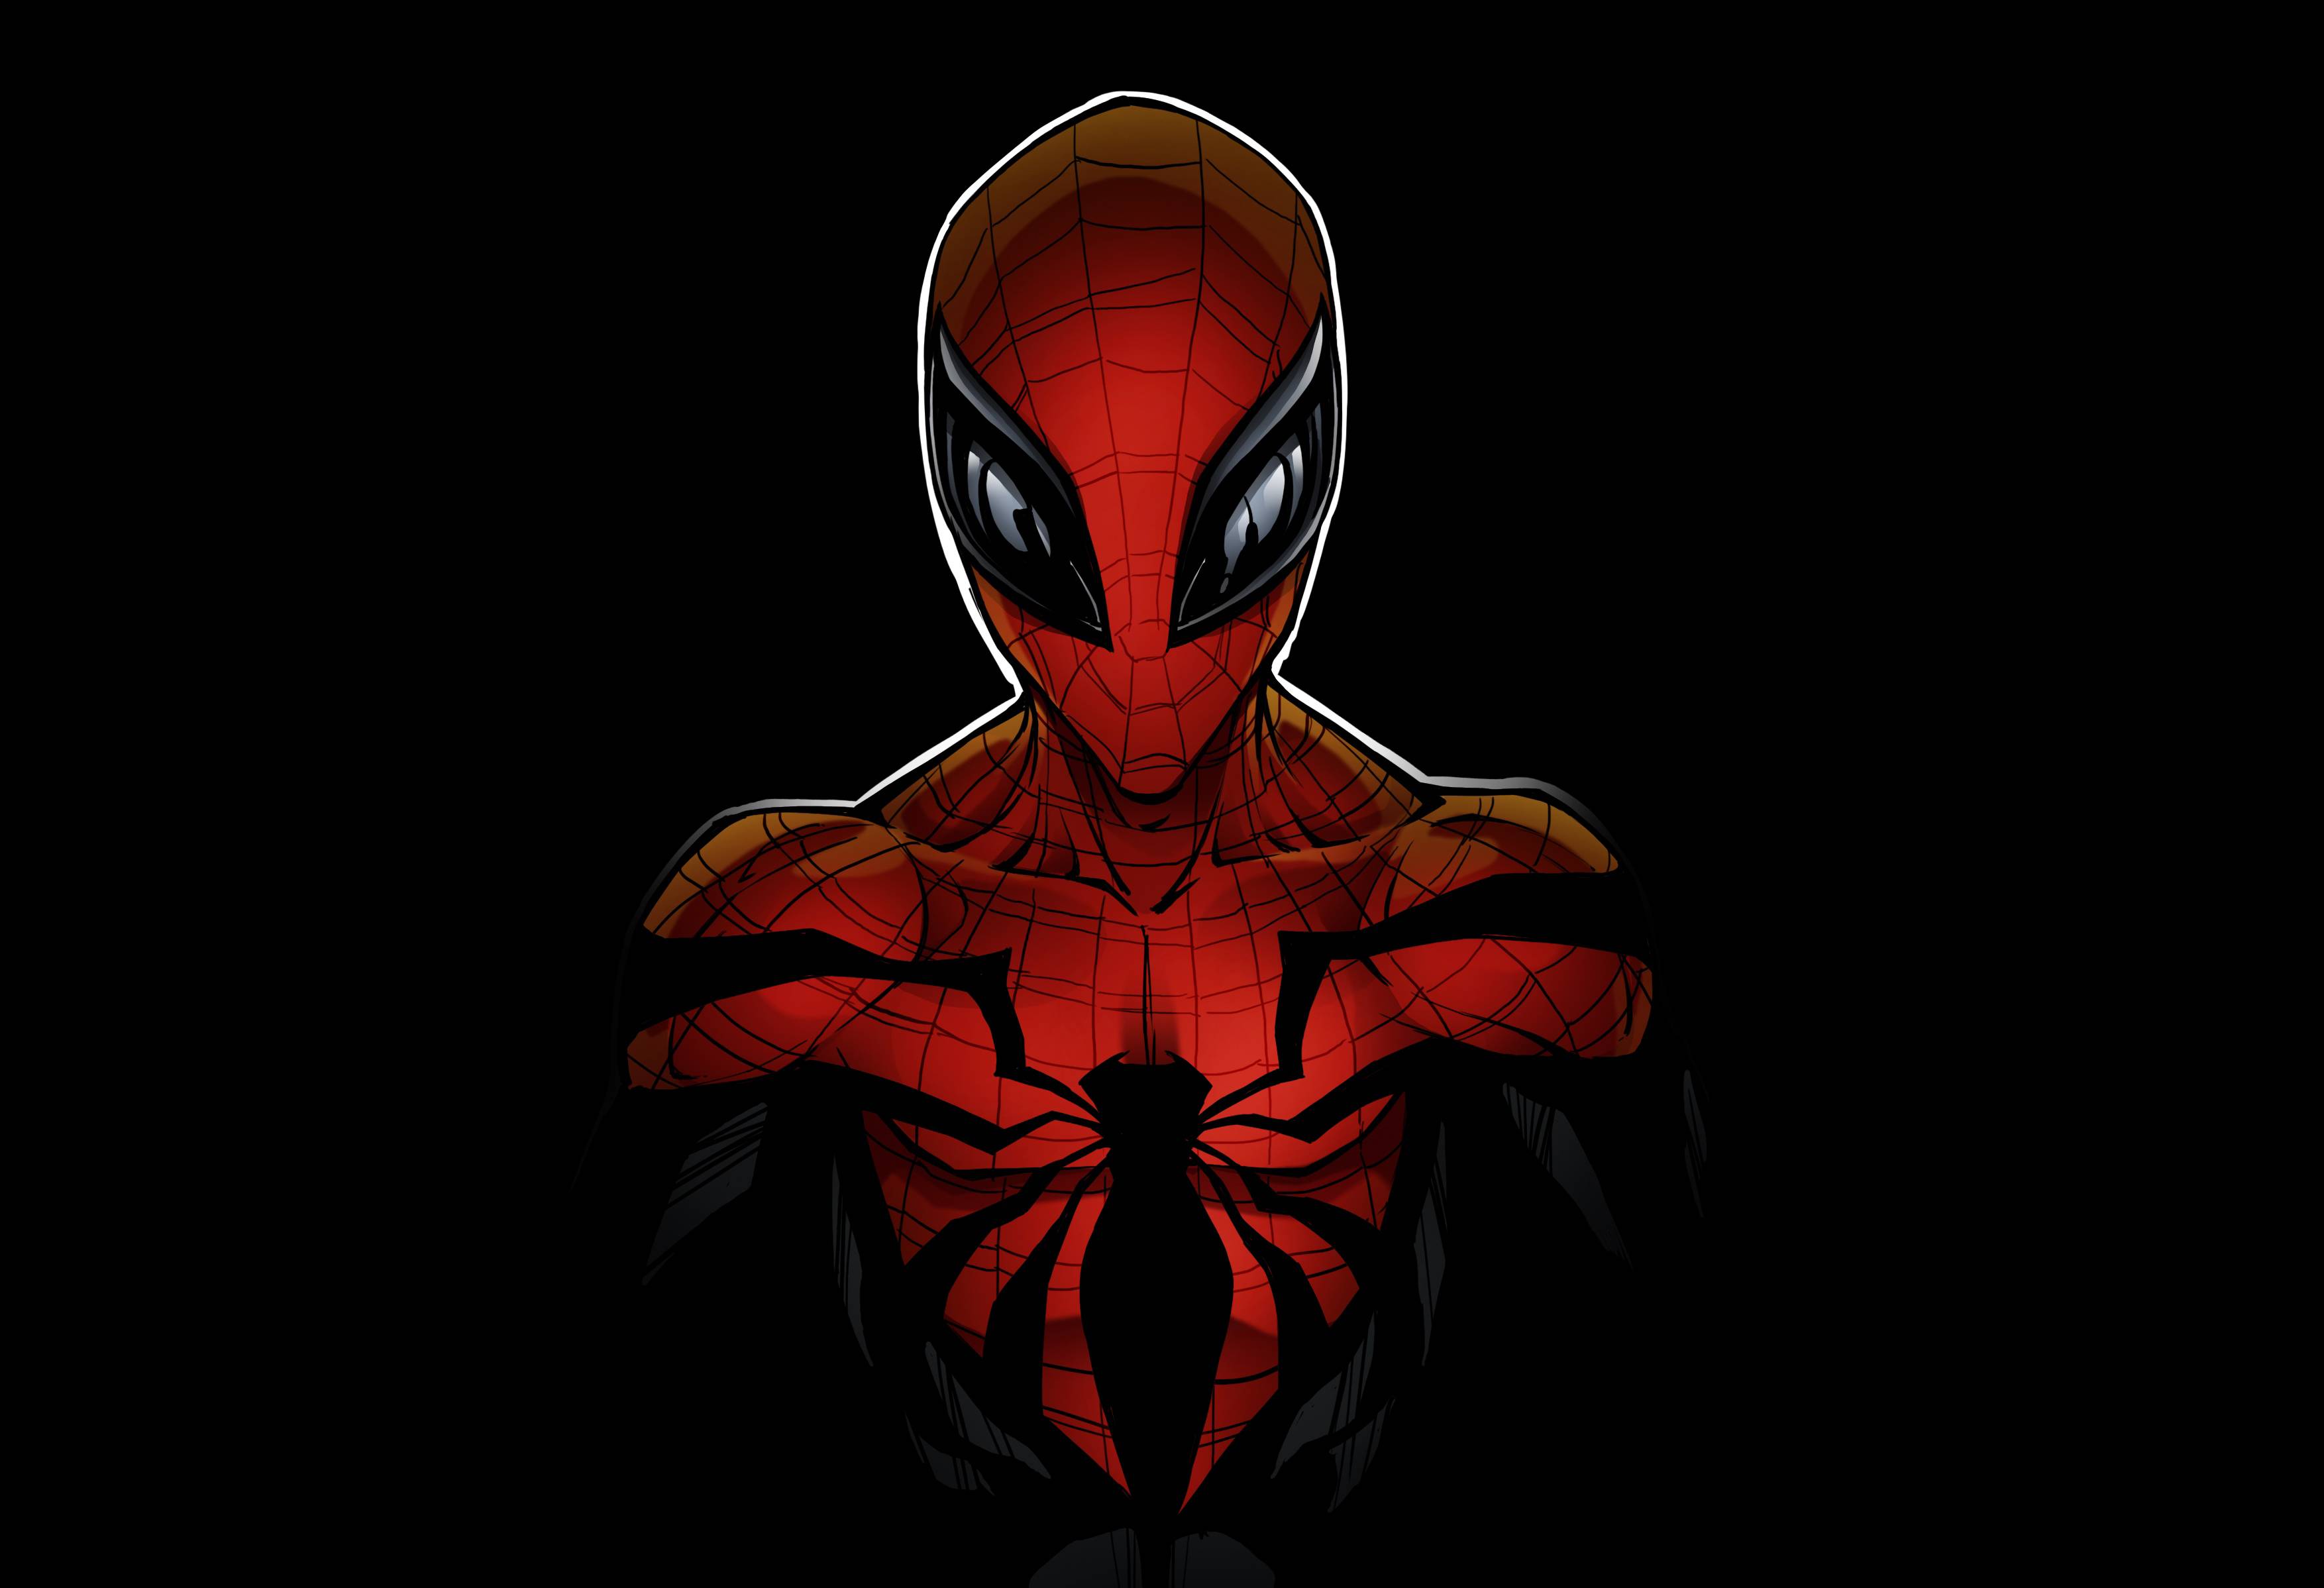  Spiderman  Wallpaper  52 3508x2397 